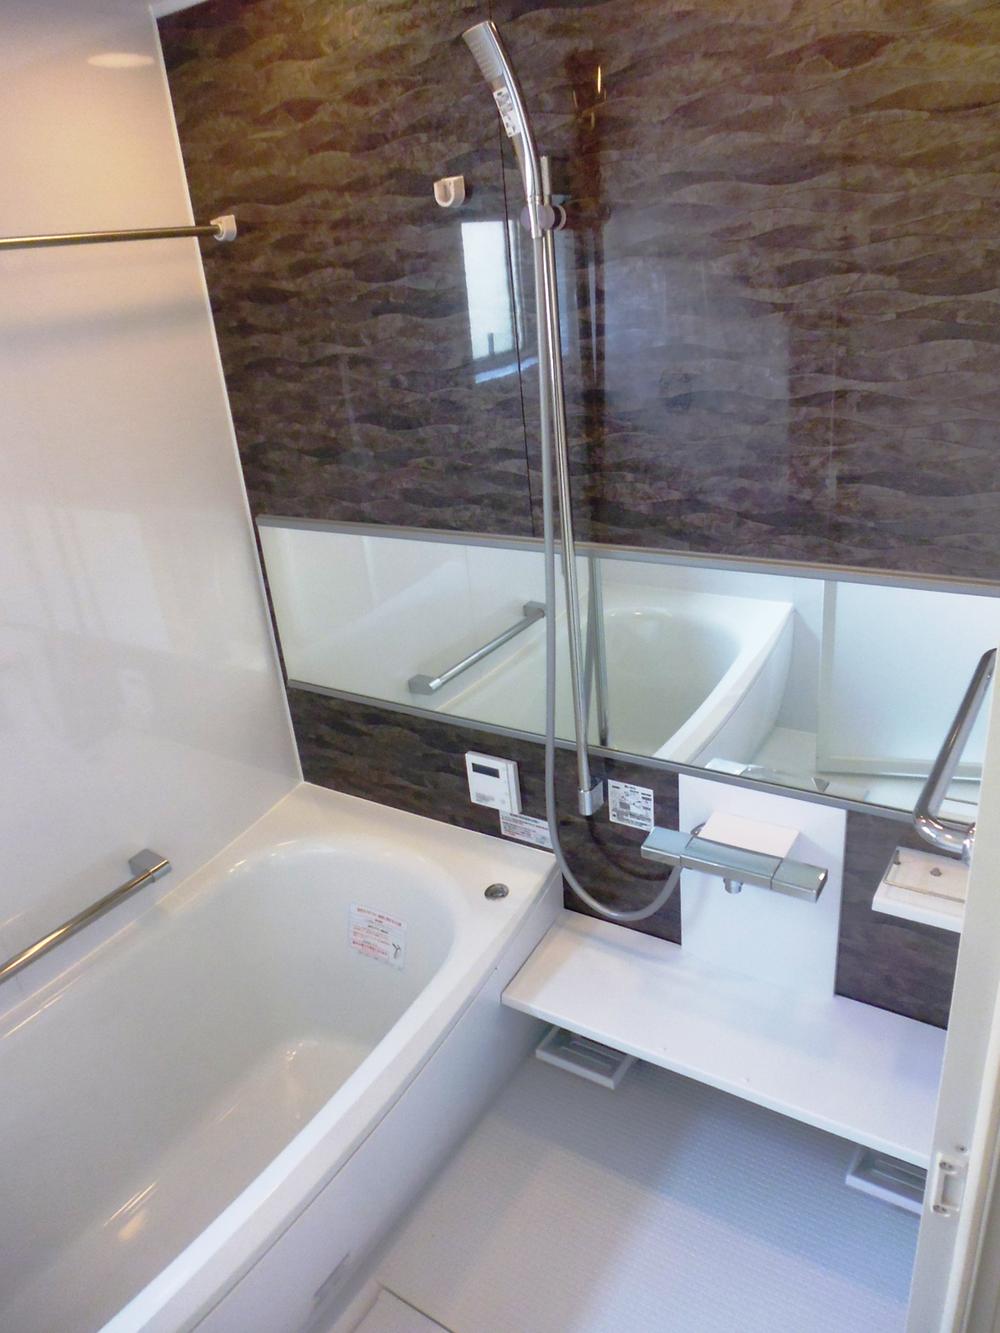 Bathroom. With bathroom dryer Thermos bath type unit bus